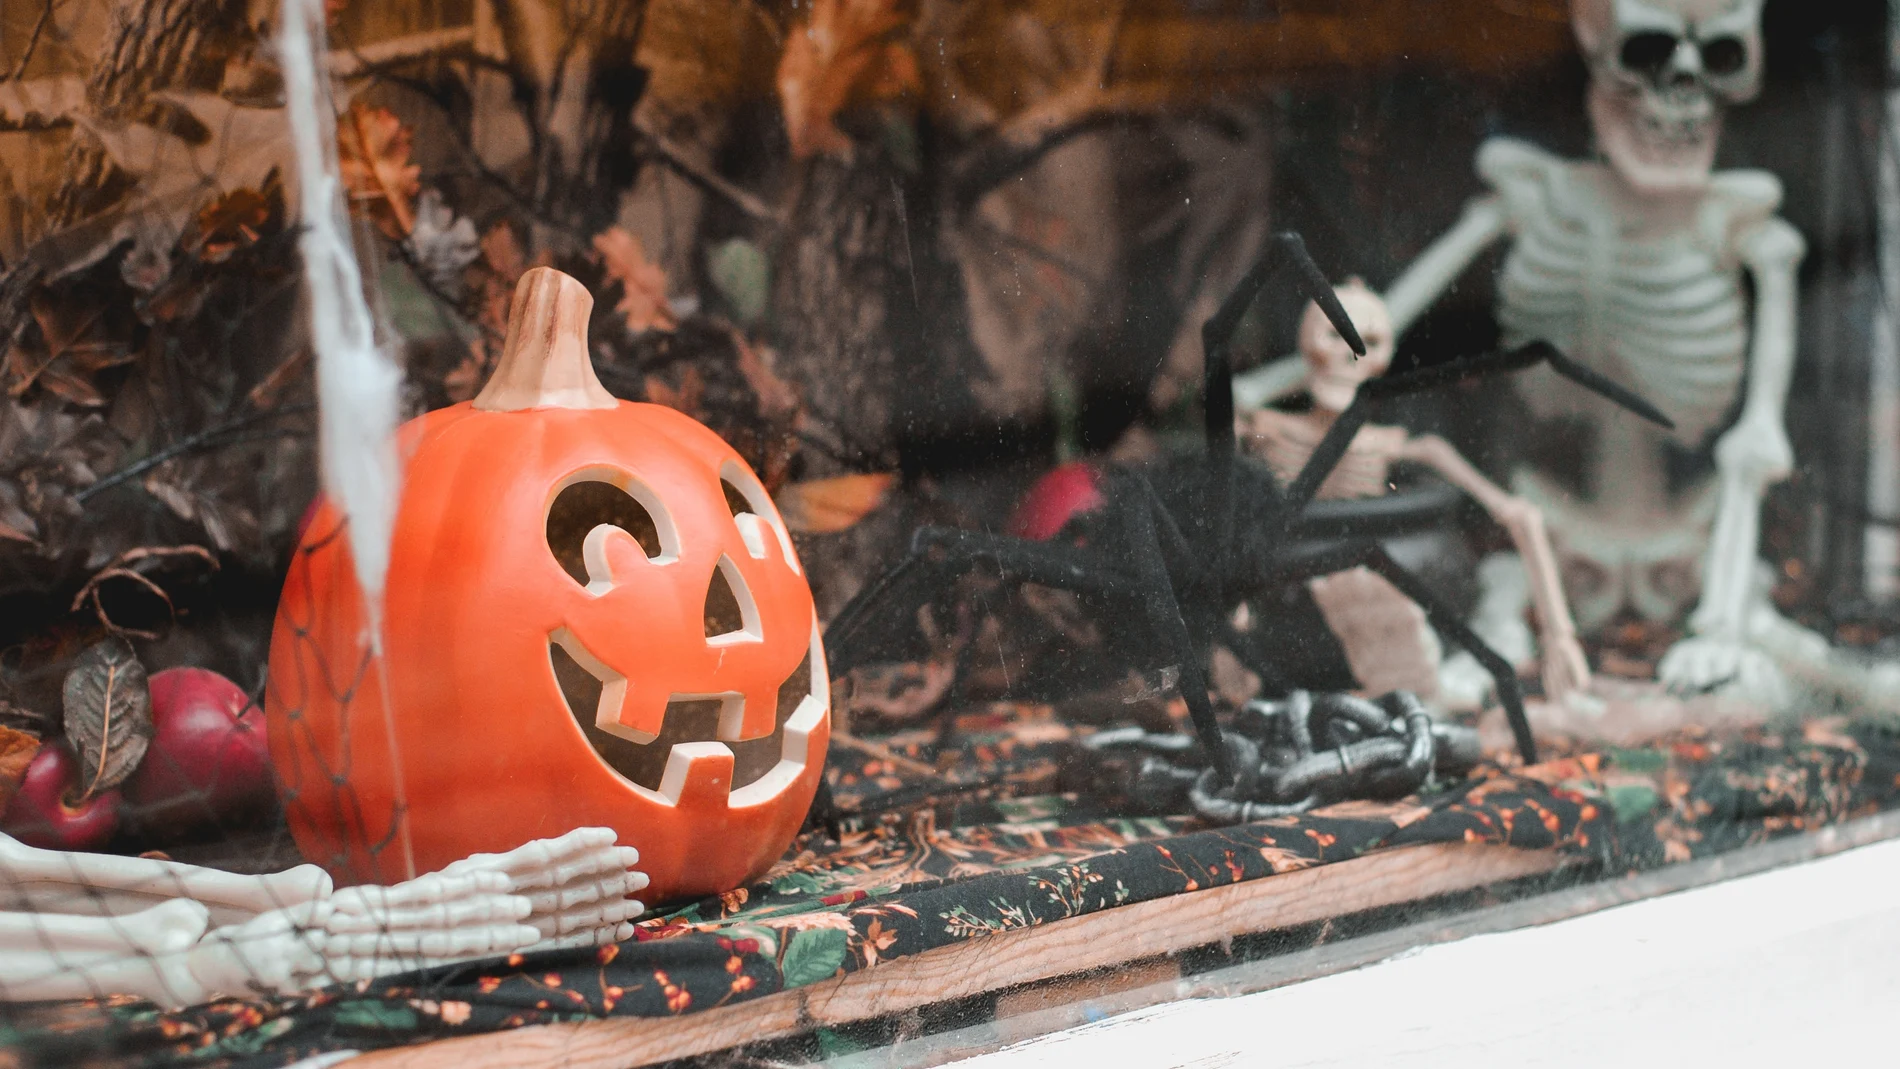 Imagen de archivo de un escaparate decorado con motivos de Halloween